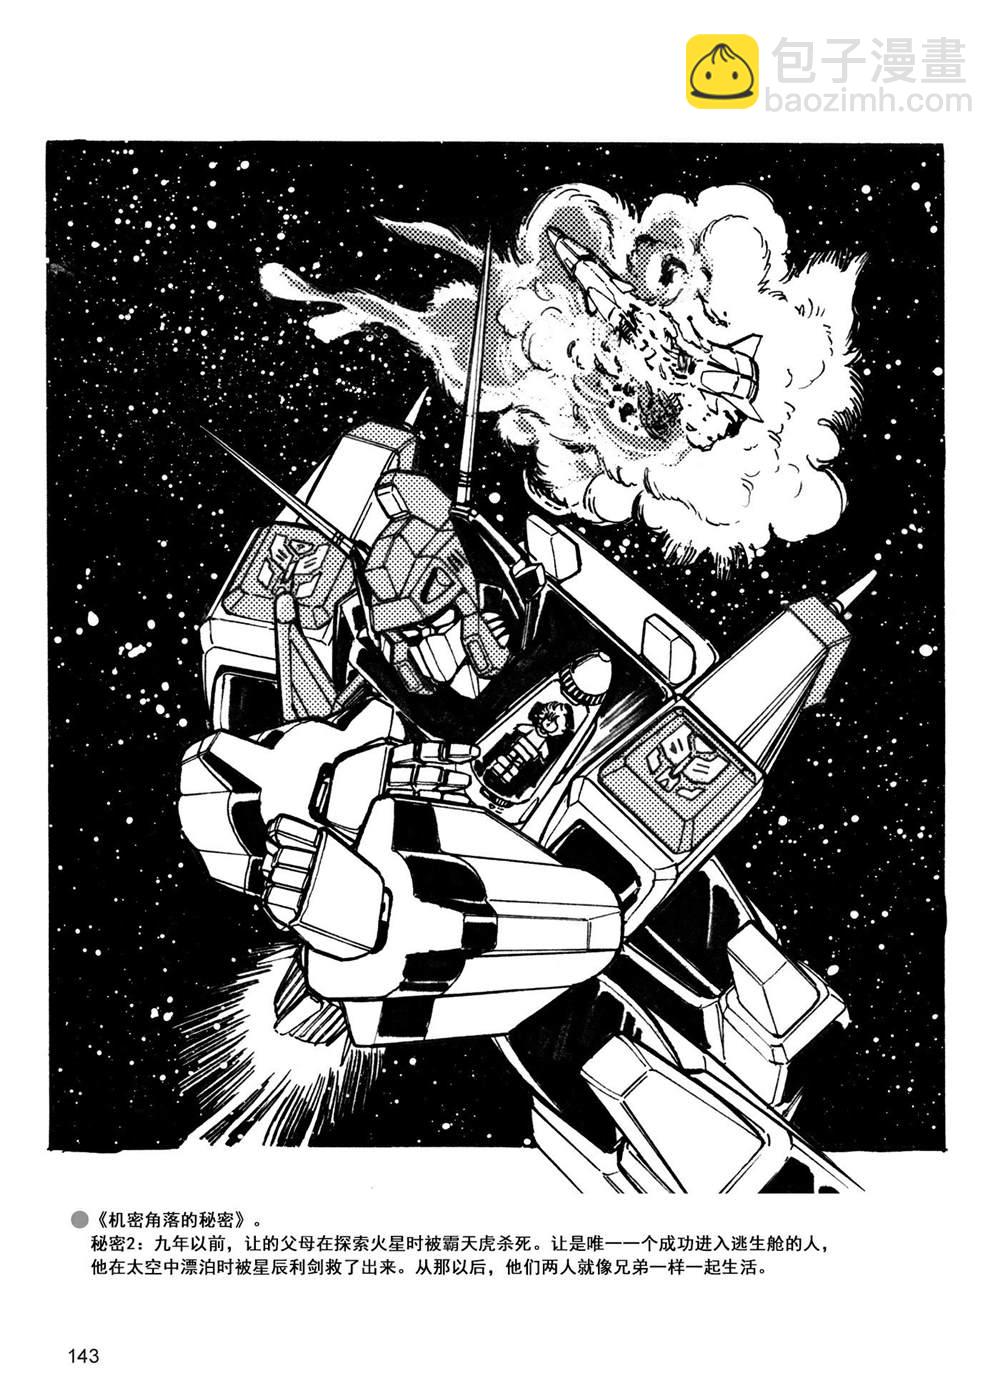 变形金刚日版G1杂志插画 - 战斗吧！超机械生命体变形金刚：胜利之斗争 - 7